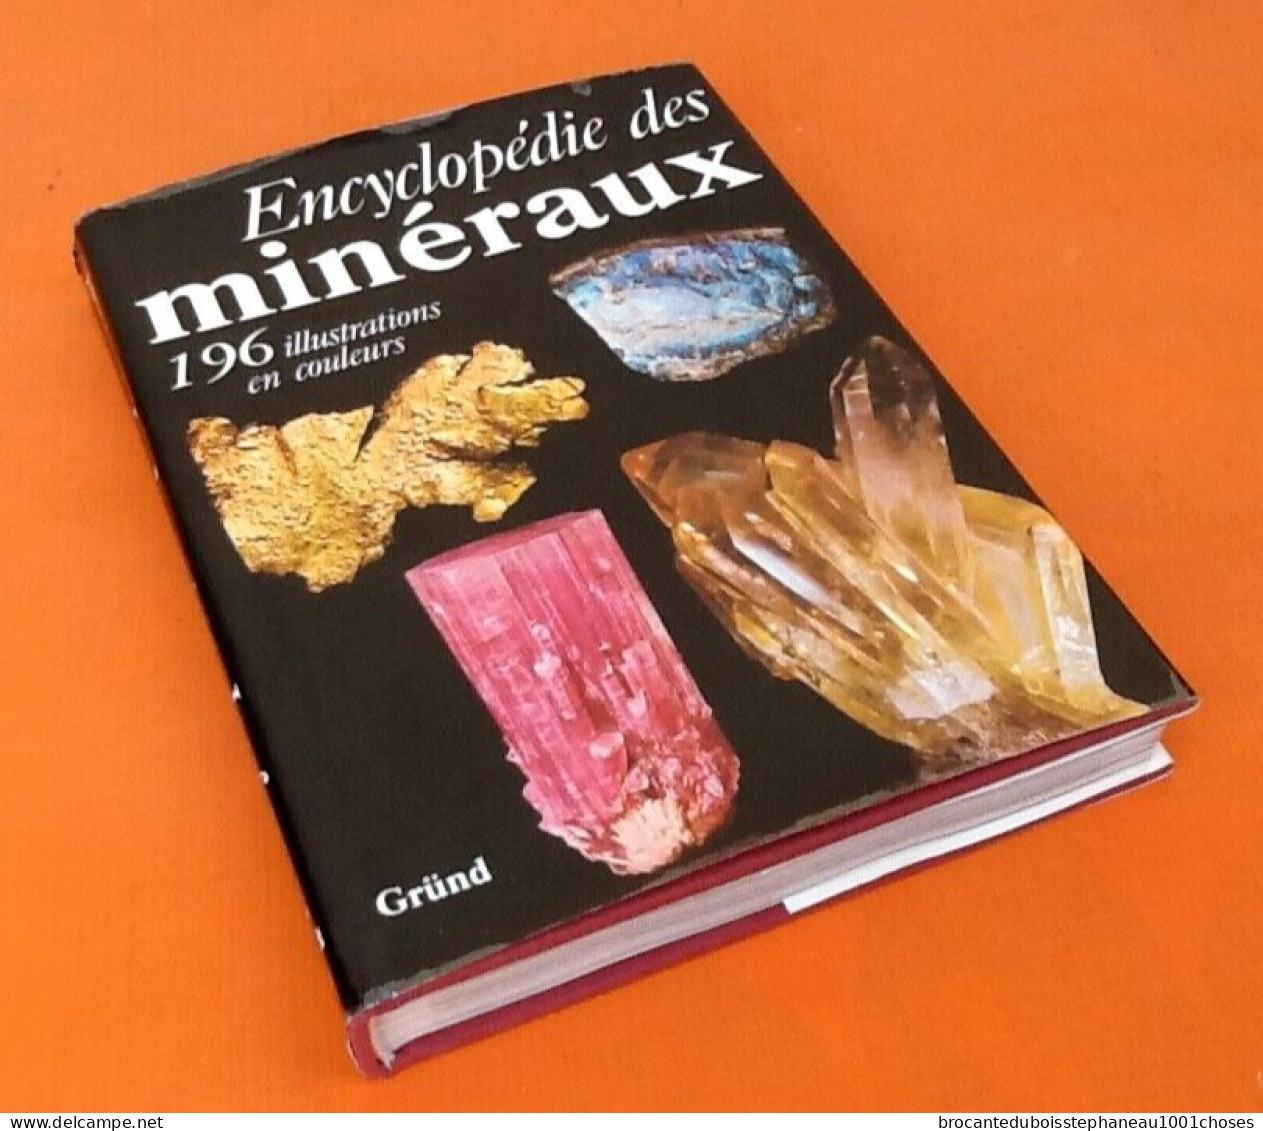 J.Kourimsky / F.Tvrz Encyclopédie des minéraux  (1989) Editions Gründ